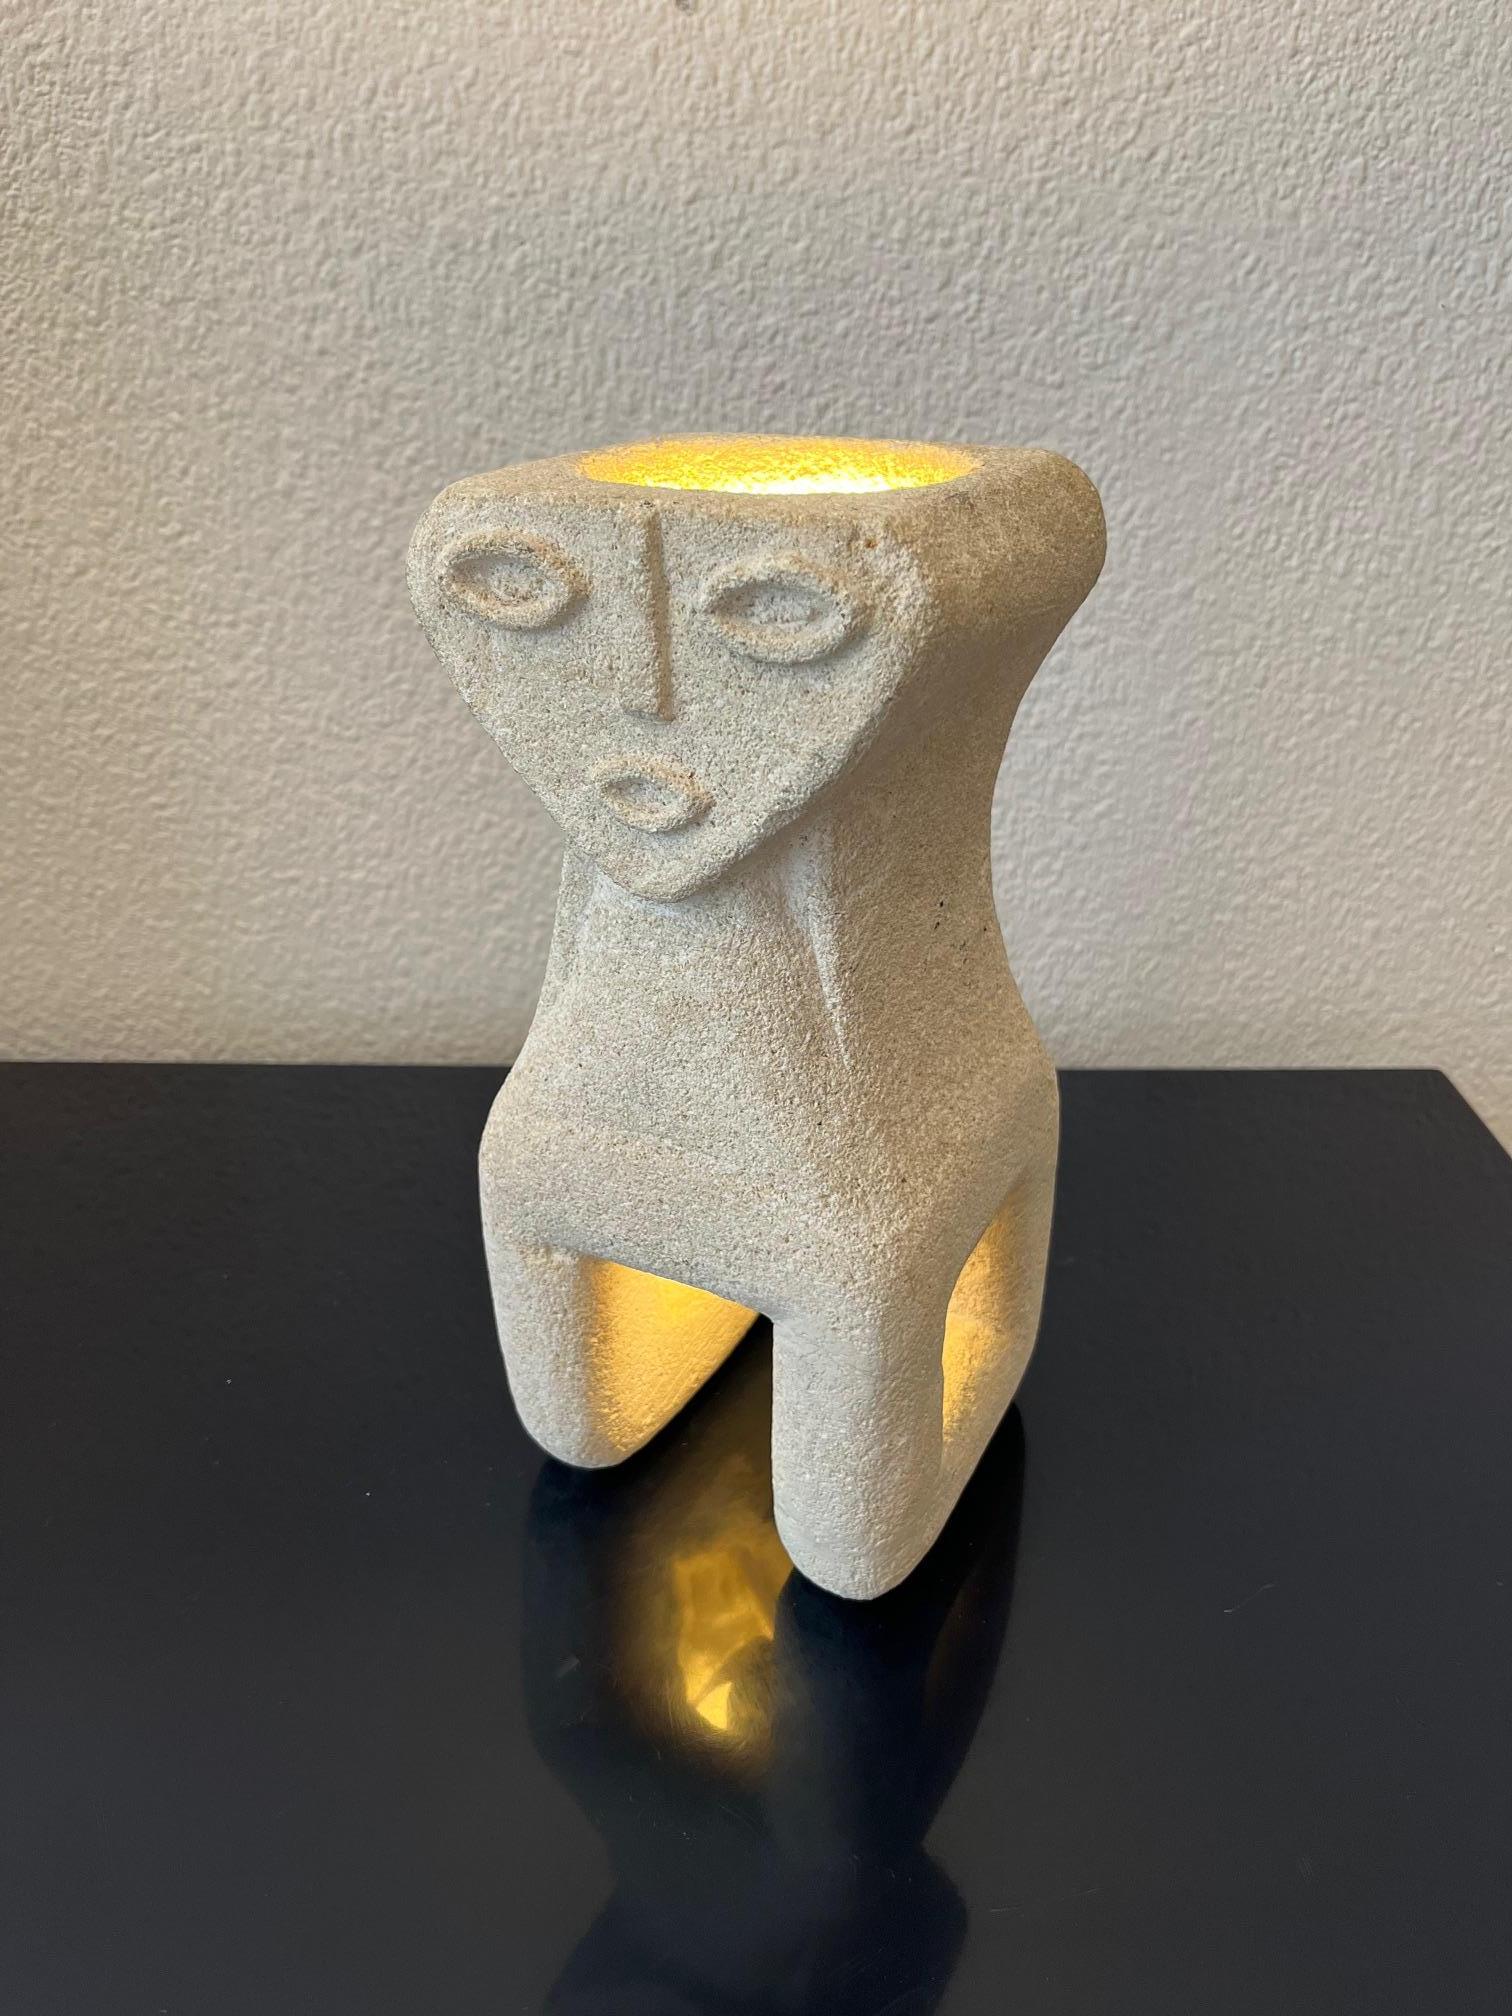 Lampe de table en pierre calcaire sculptée à la main avec un visage triangulaire mystique par Albert Tormos, France ca. 1970s
Bon état. Restauré à 2 endroits, en bas, voir photos.
Signé sur le côté ( photos )

